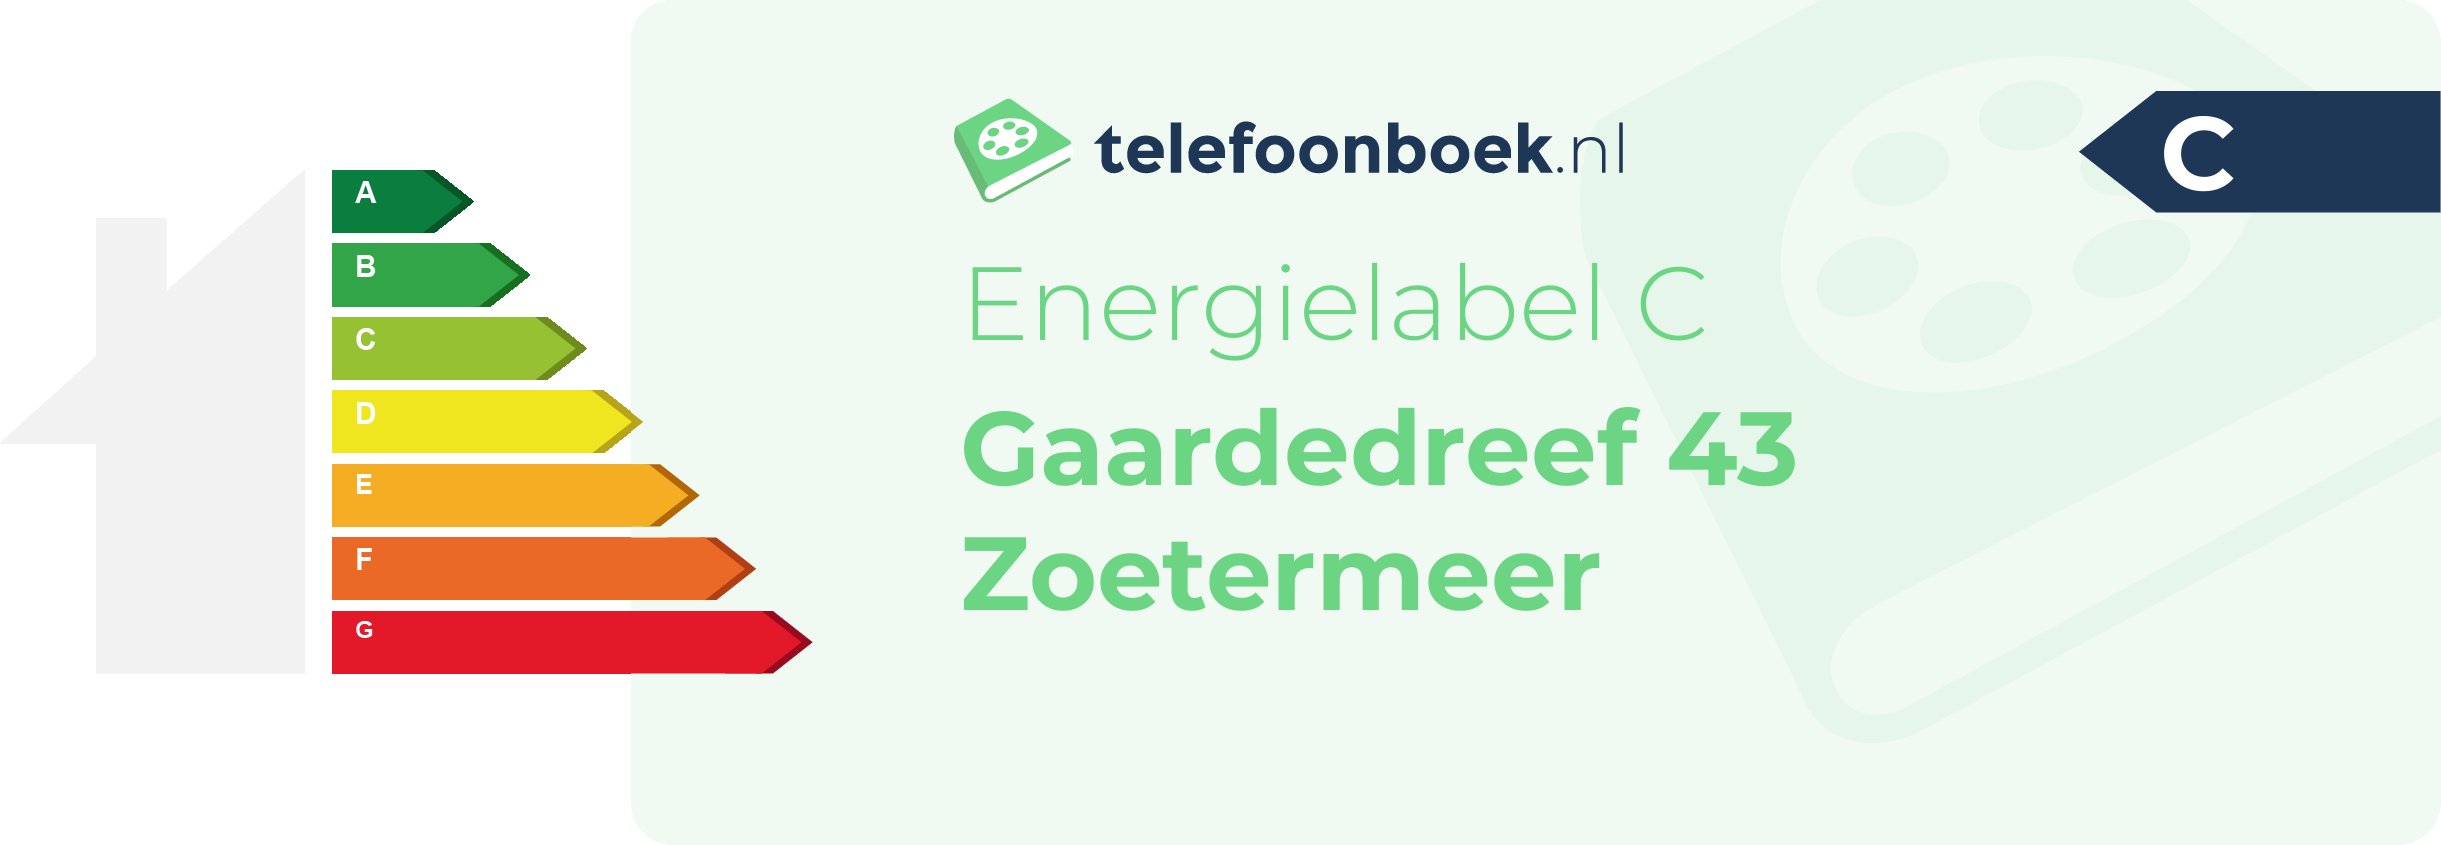 Energielabel Gaardedreef 43 Zoetermeer